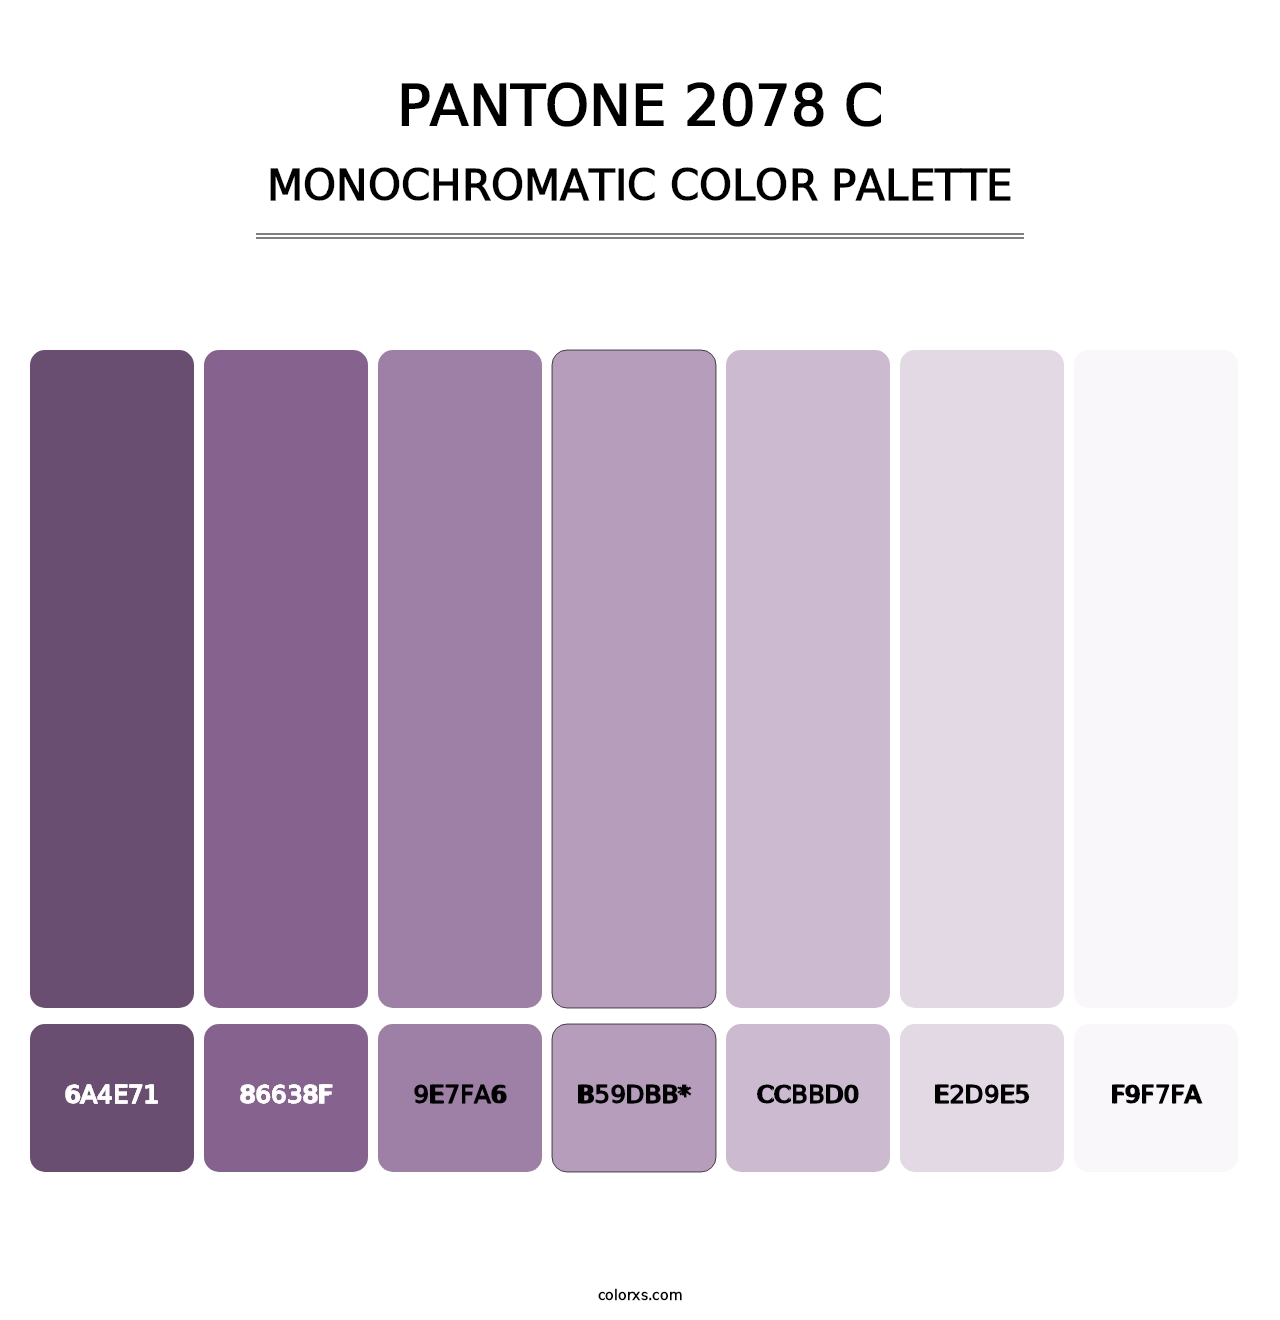 PANTONE 2078 C - Monochromatic Color Palette